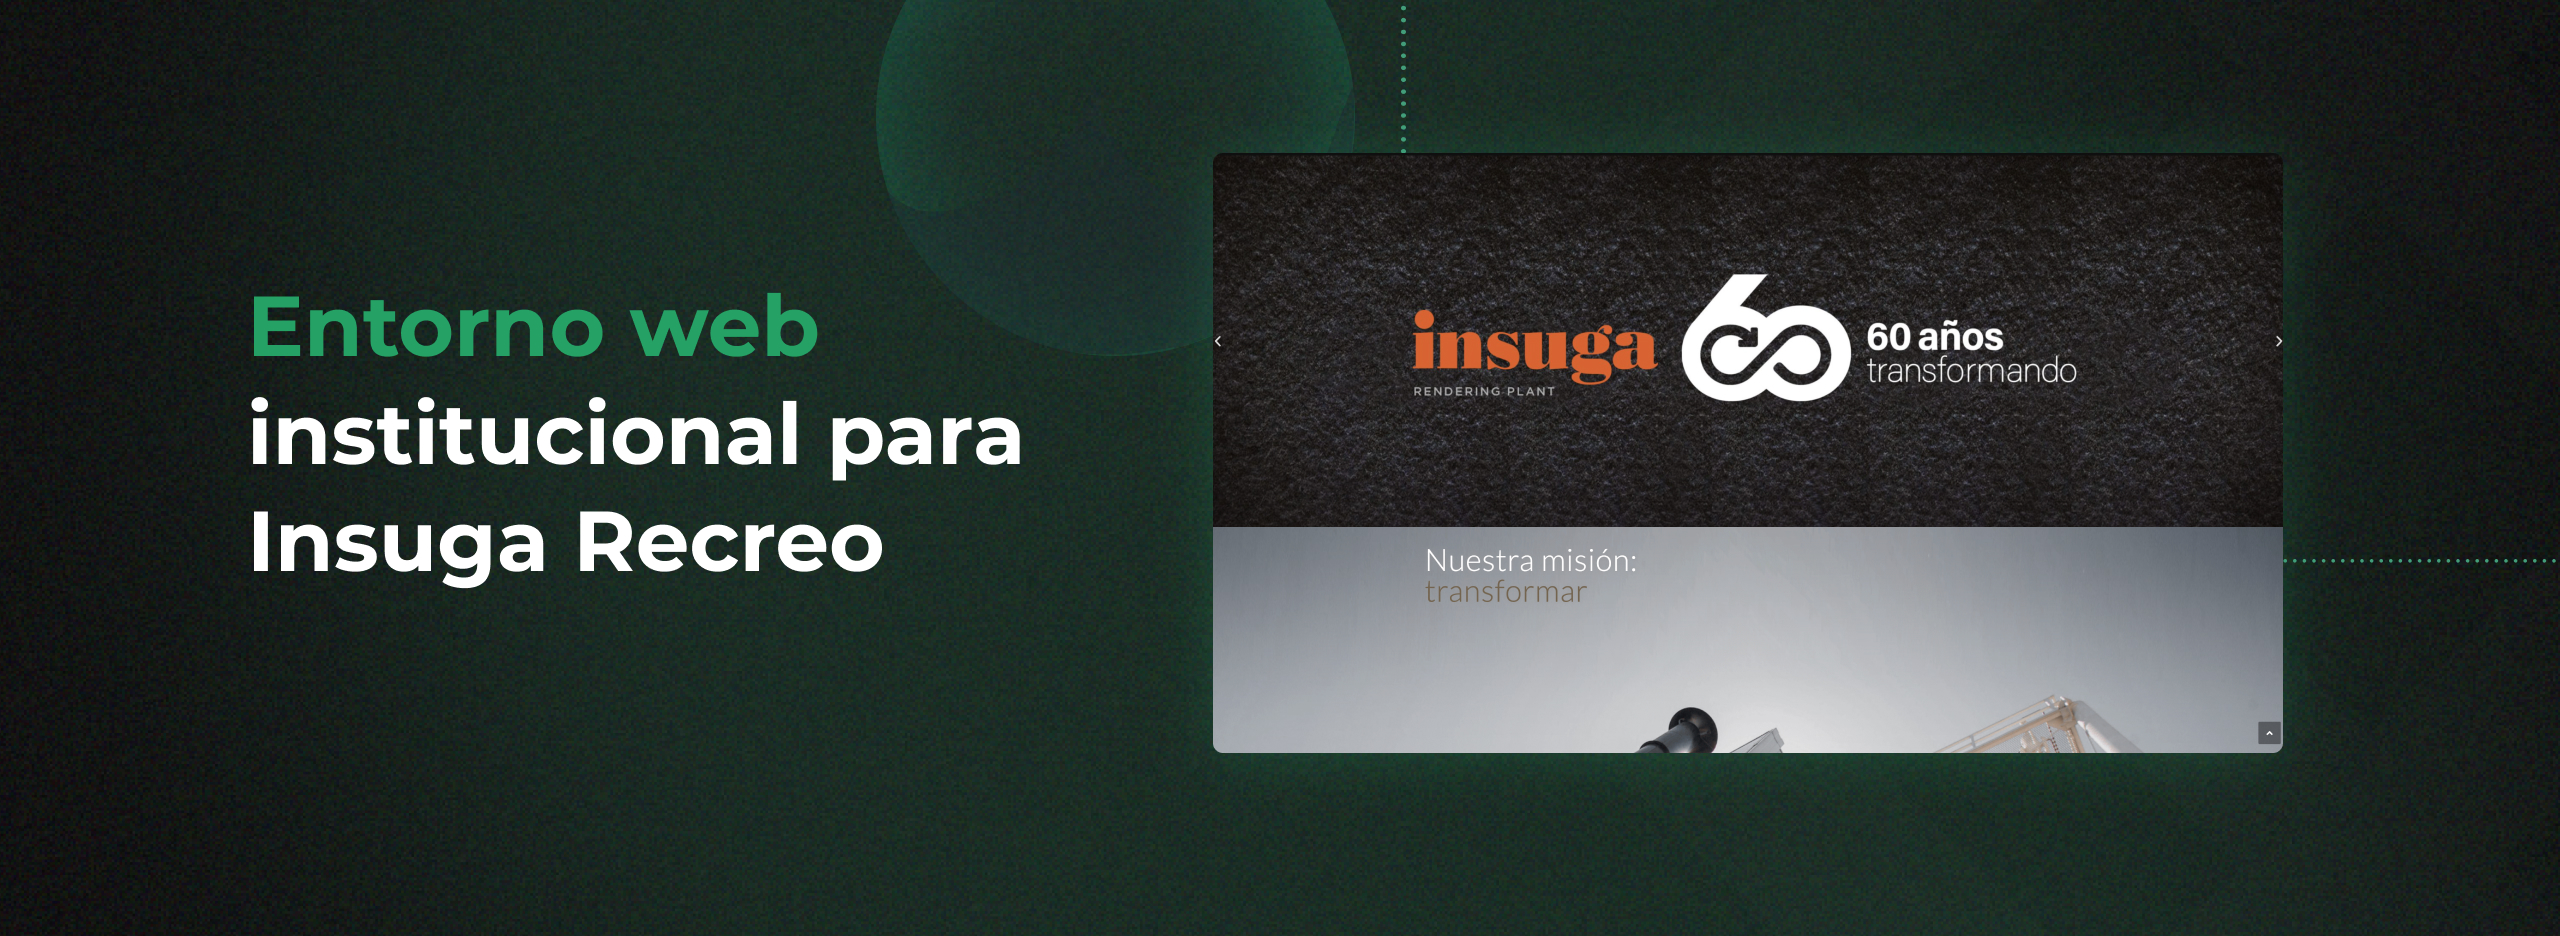 Insuga Recreo: institutional web site